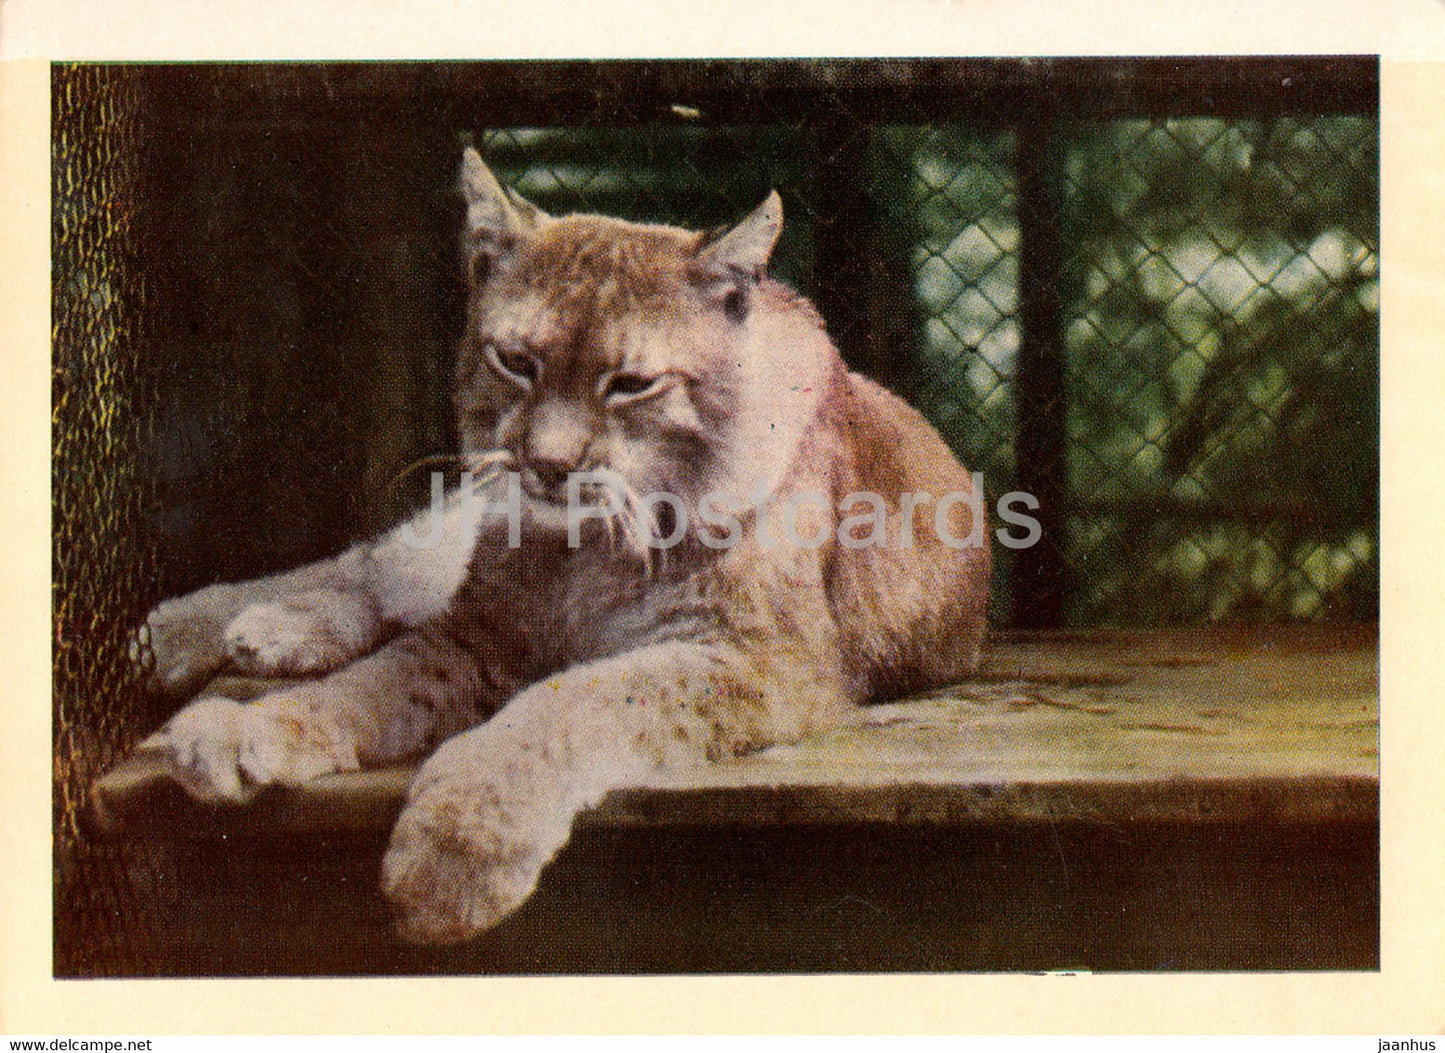 Riga Zoo - Lynx - Latvia USSR - unused - JH Postcards